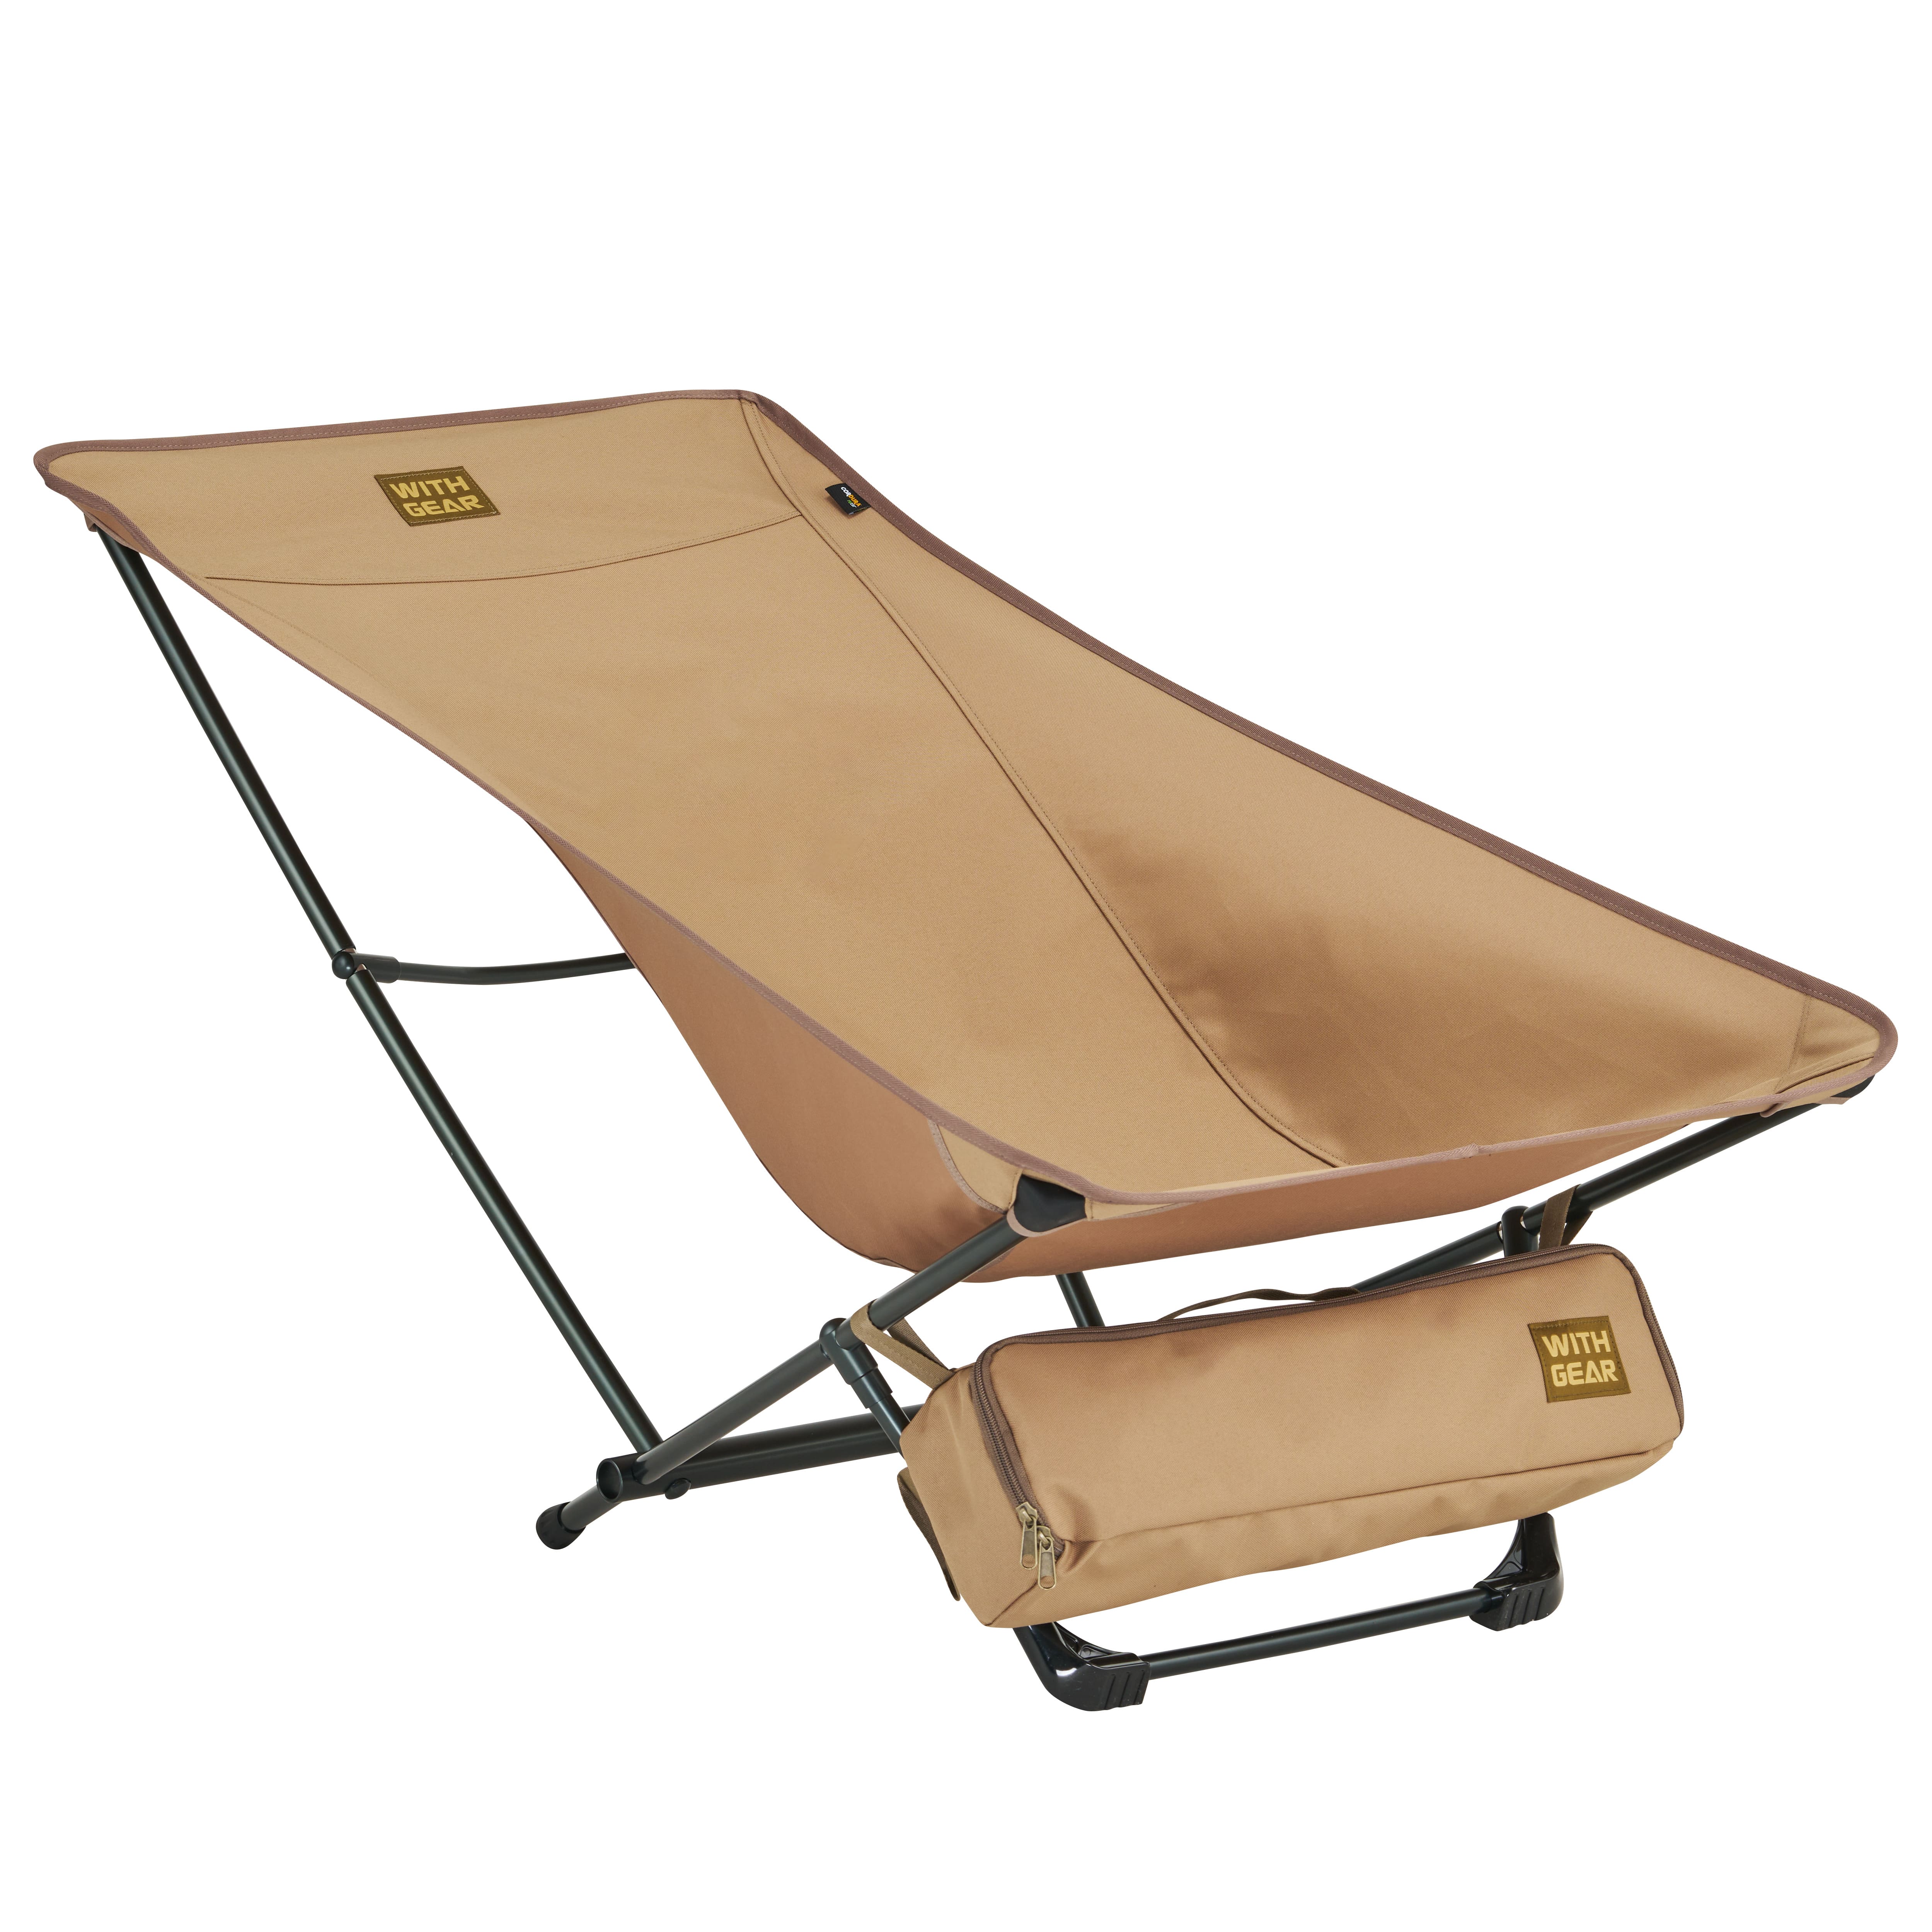 체어 그래비티 2(Chair Gravity 2)코요테브라운 초경량 침대(Cot)체어